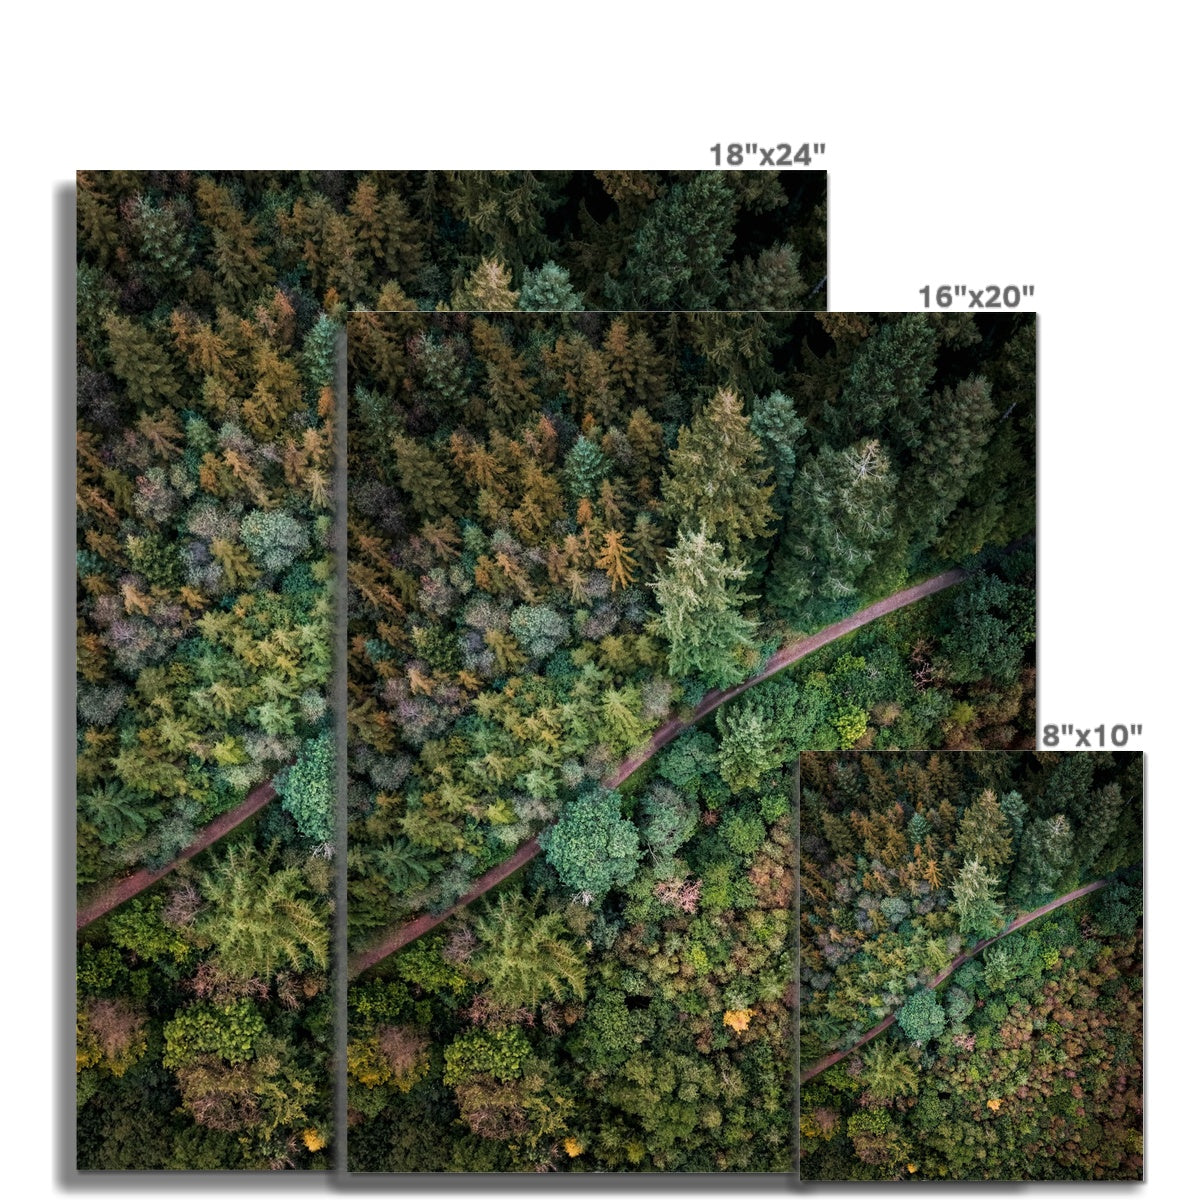 cardinham woods picture sizes